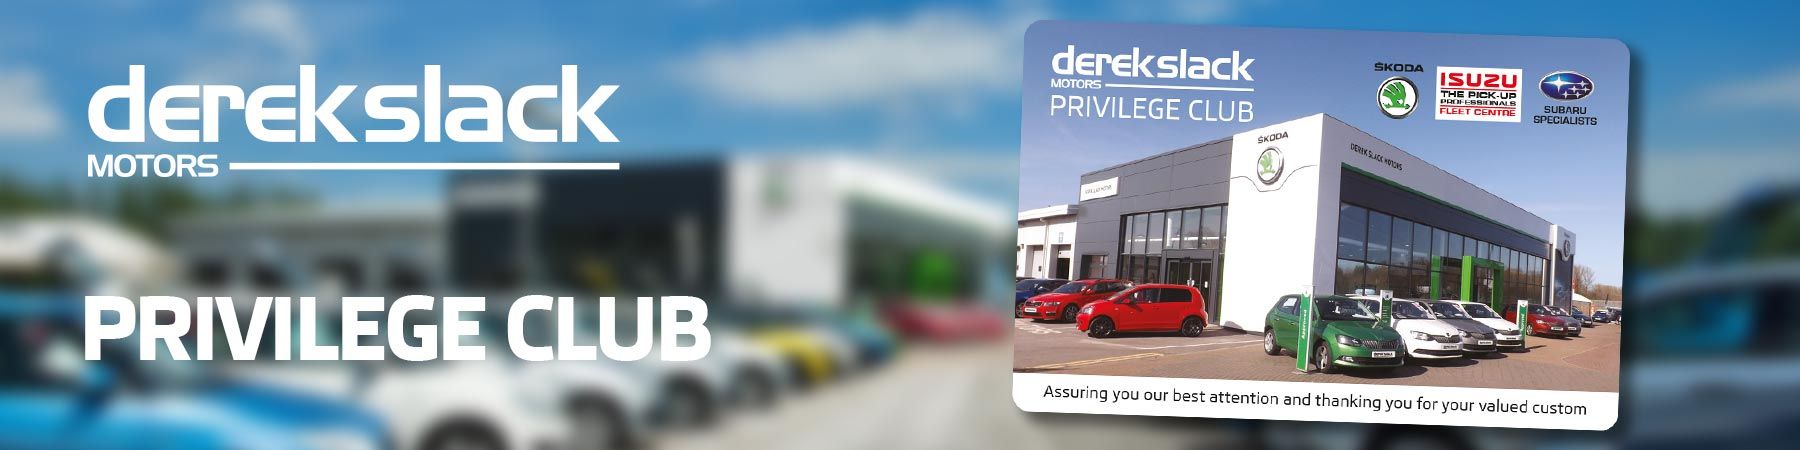 Privilege Club at Derek Slack Motors